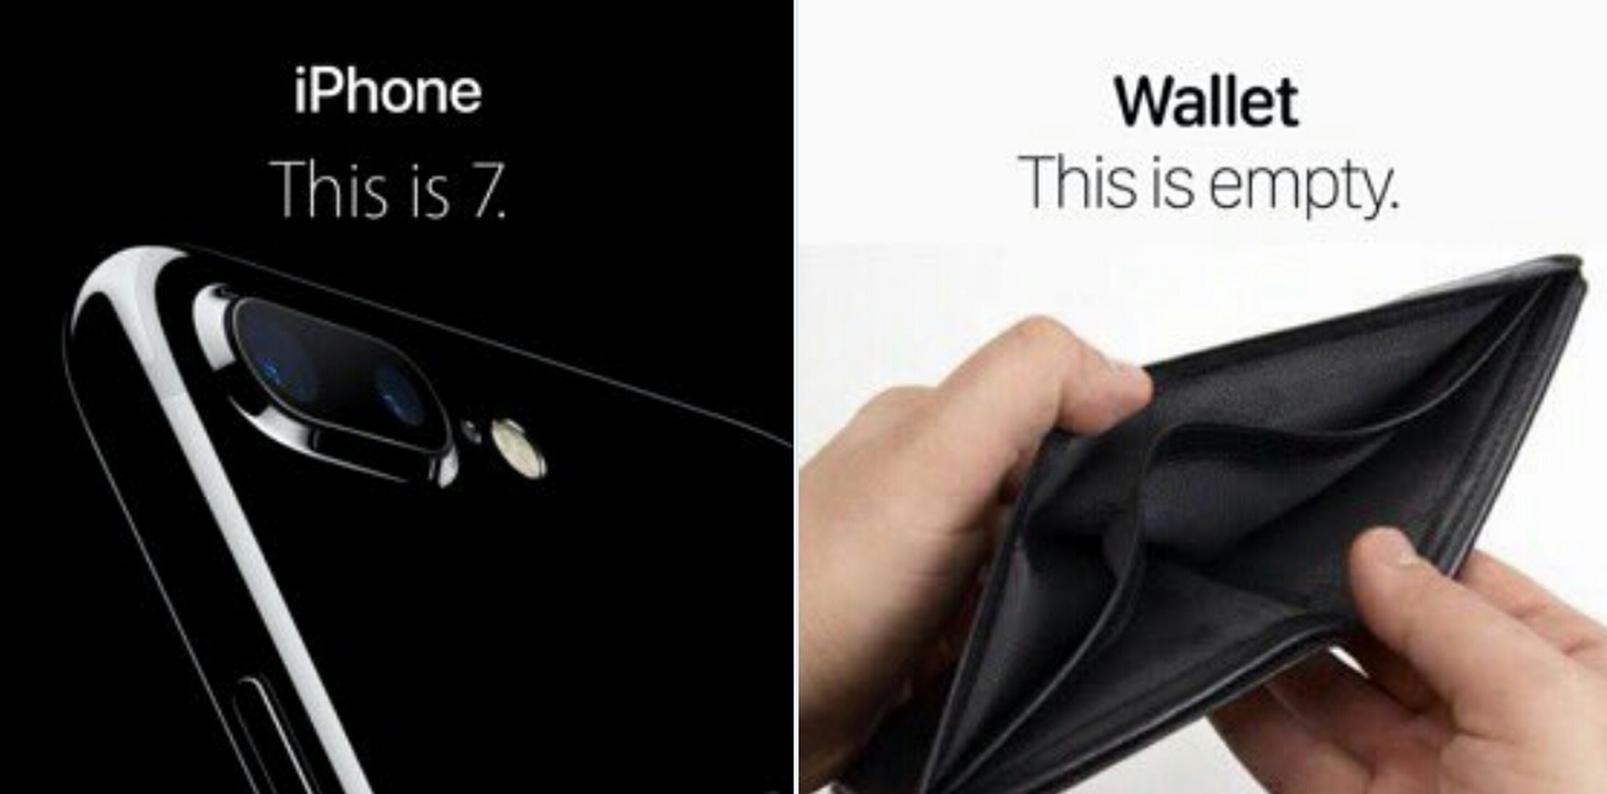 iphone-wallet-empty